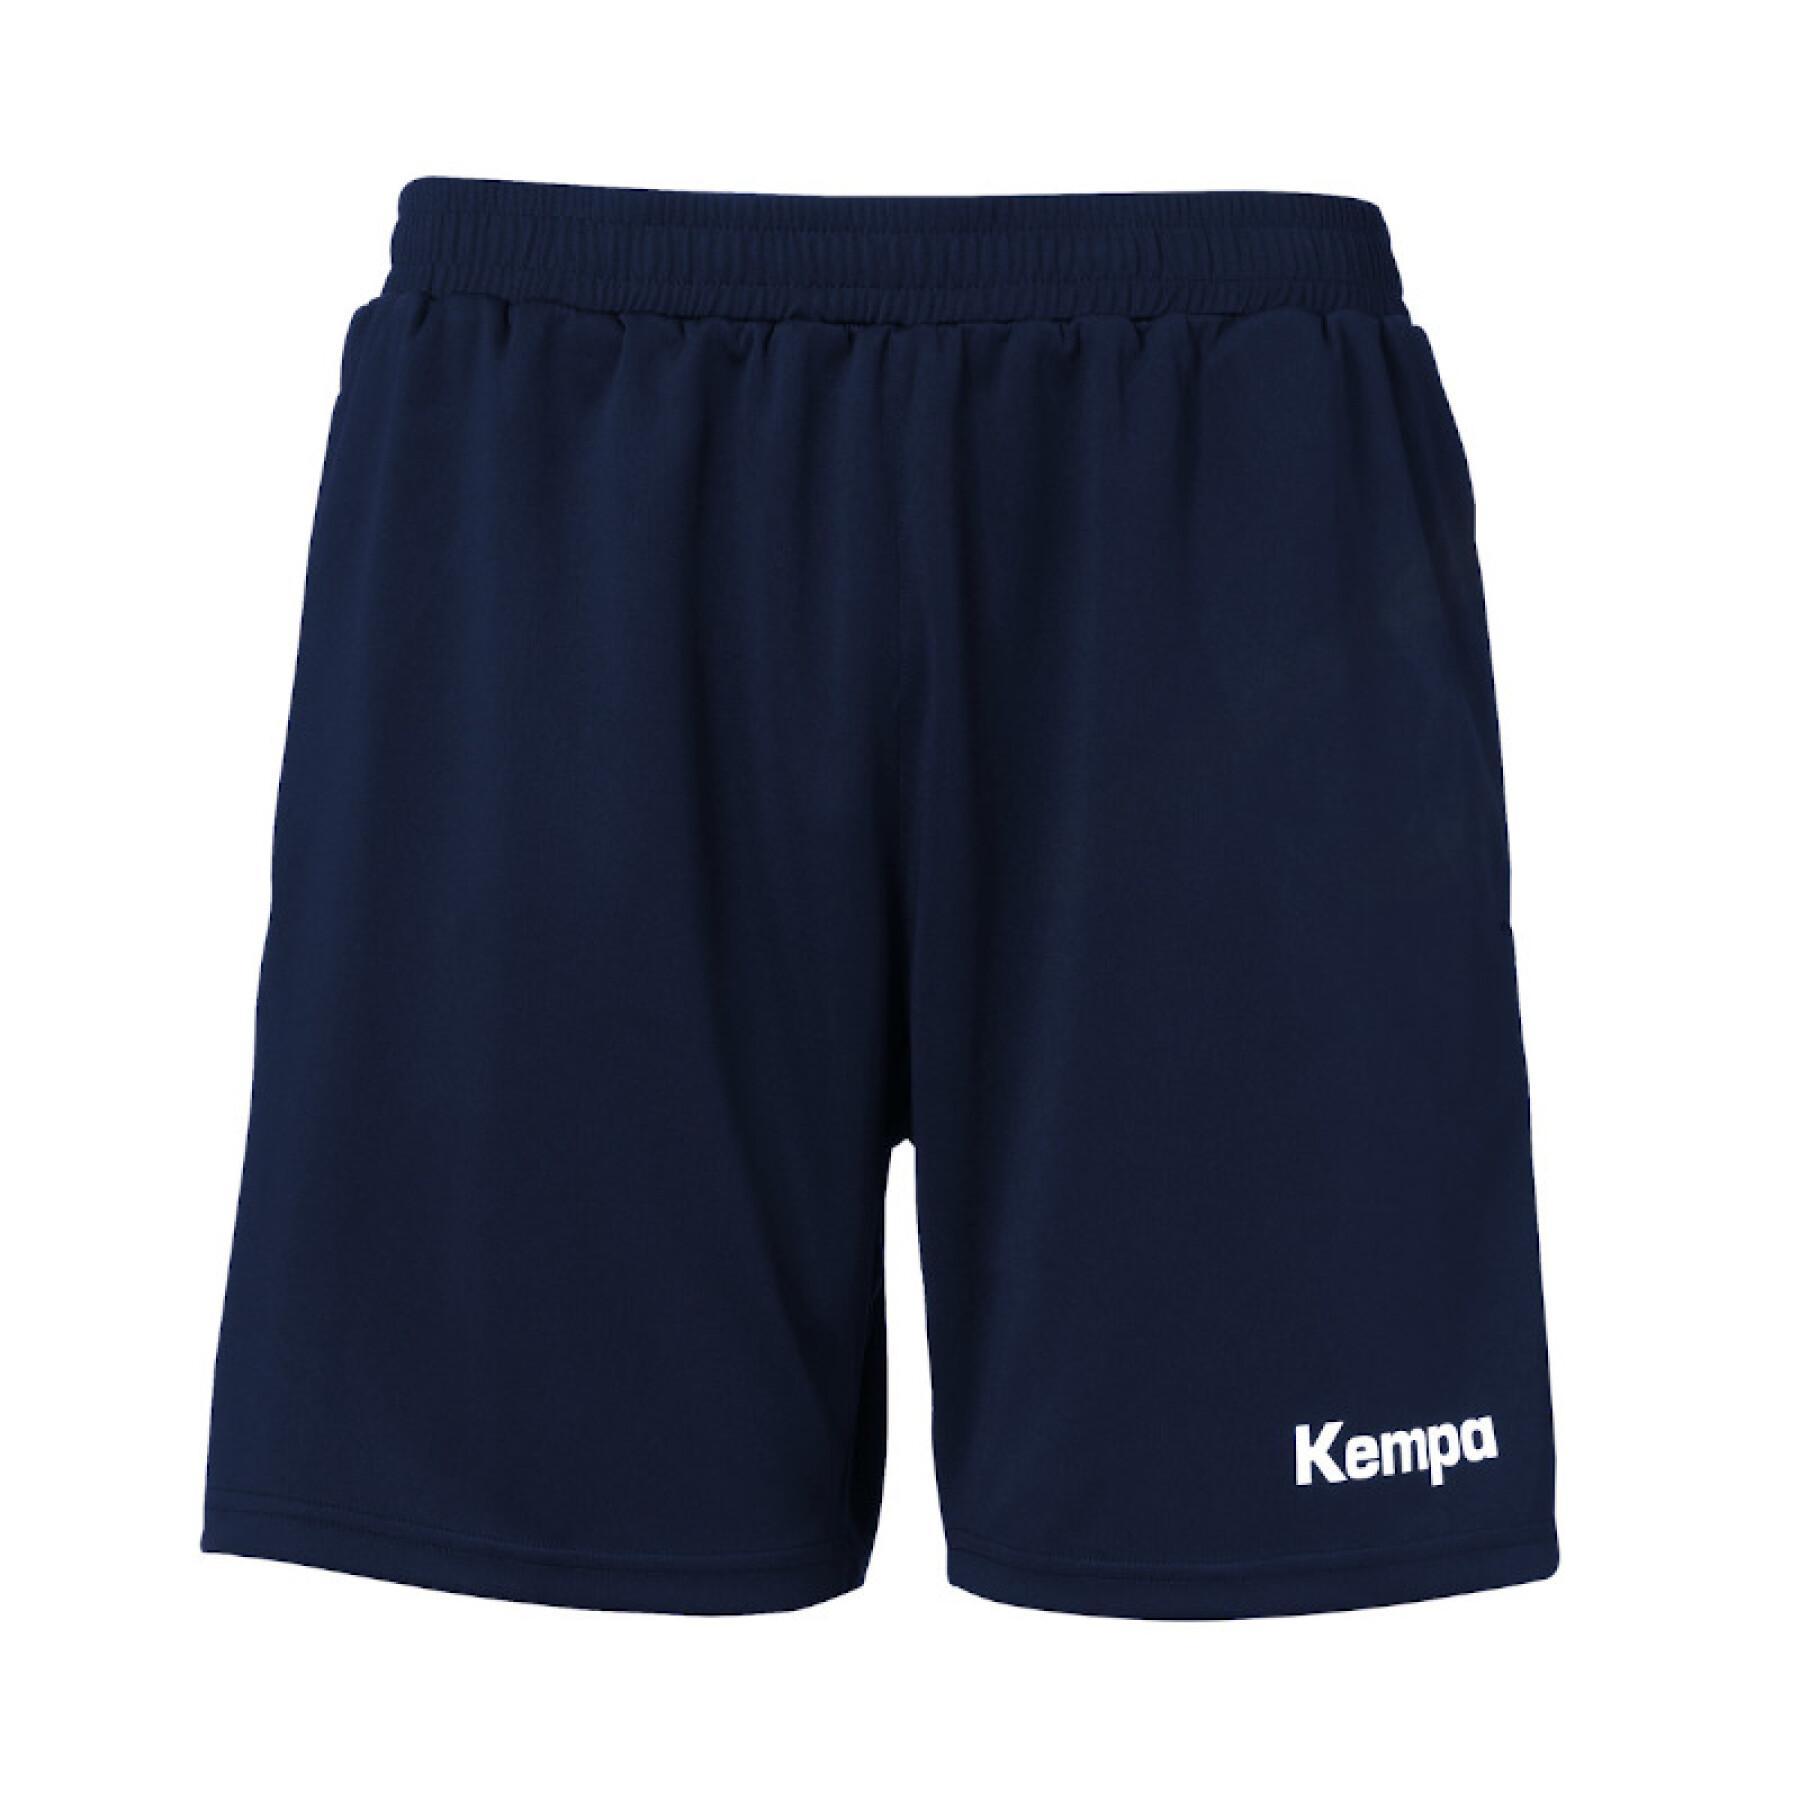 Short with pocket Kempa